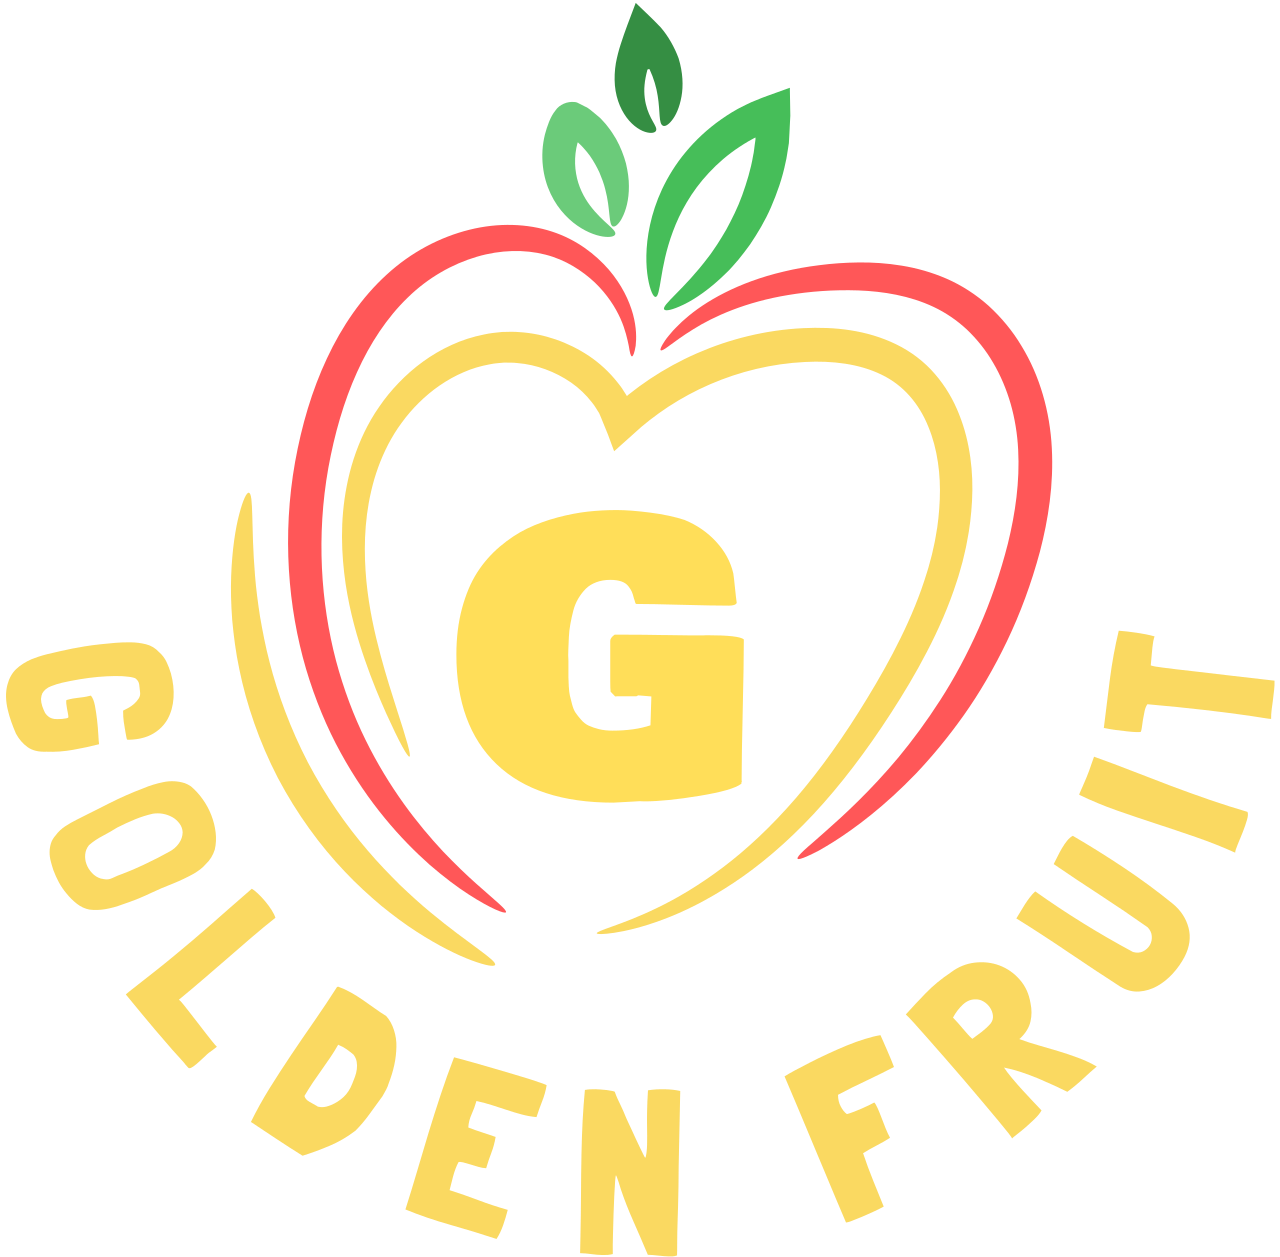 GOLDEN FRUIT's logo